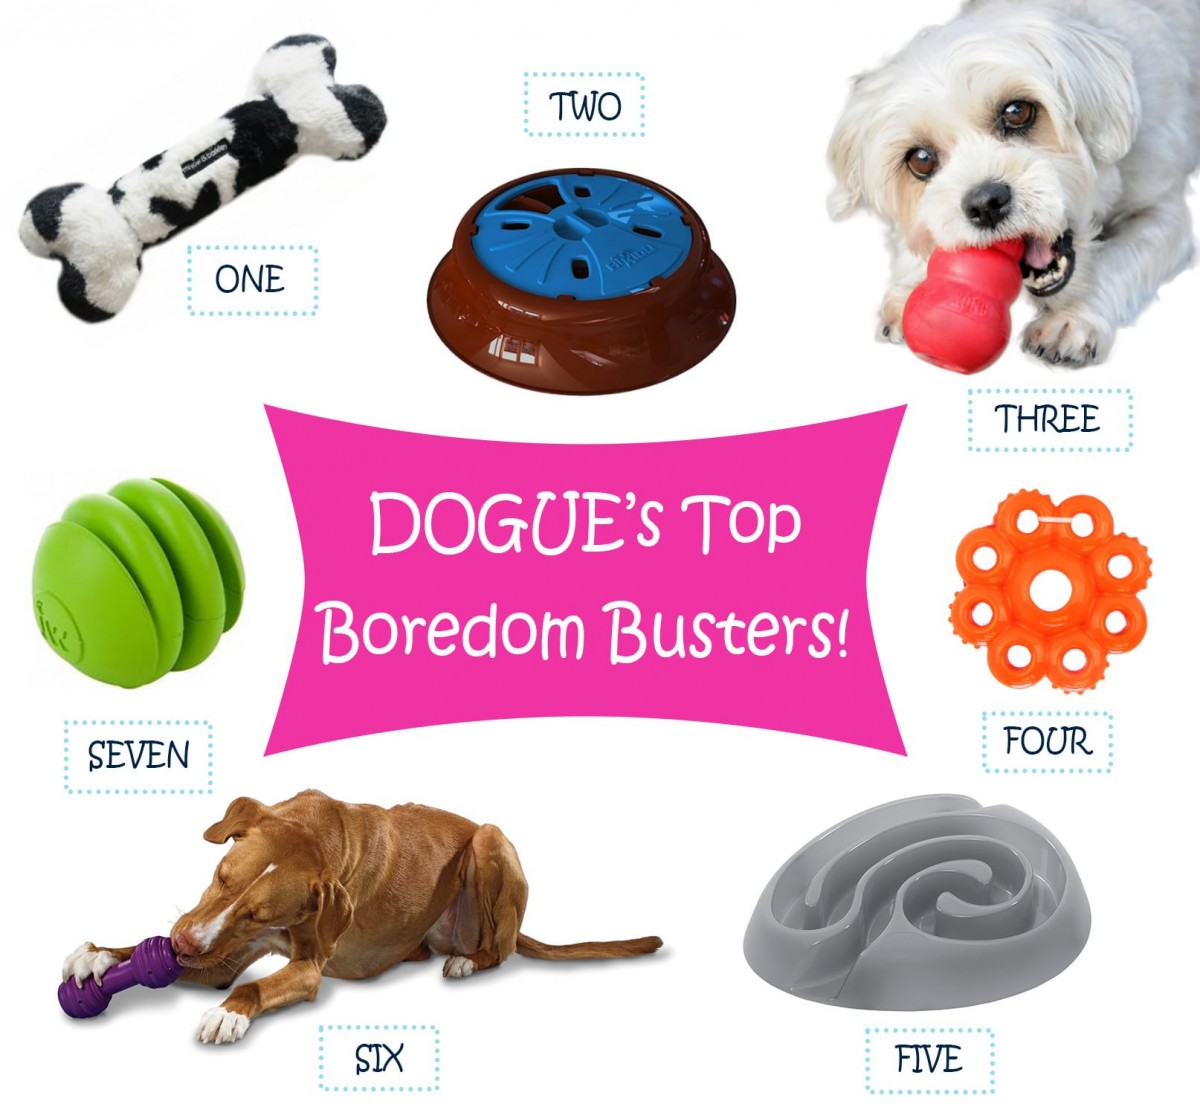 Interactive Dog Toys To Banish Boredom - Good Dog People™